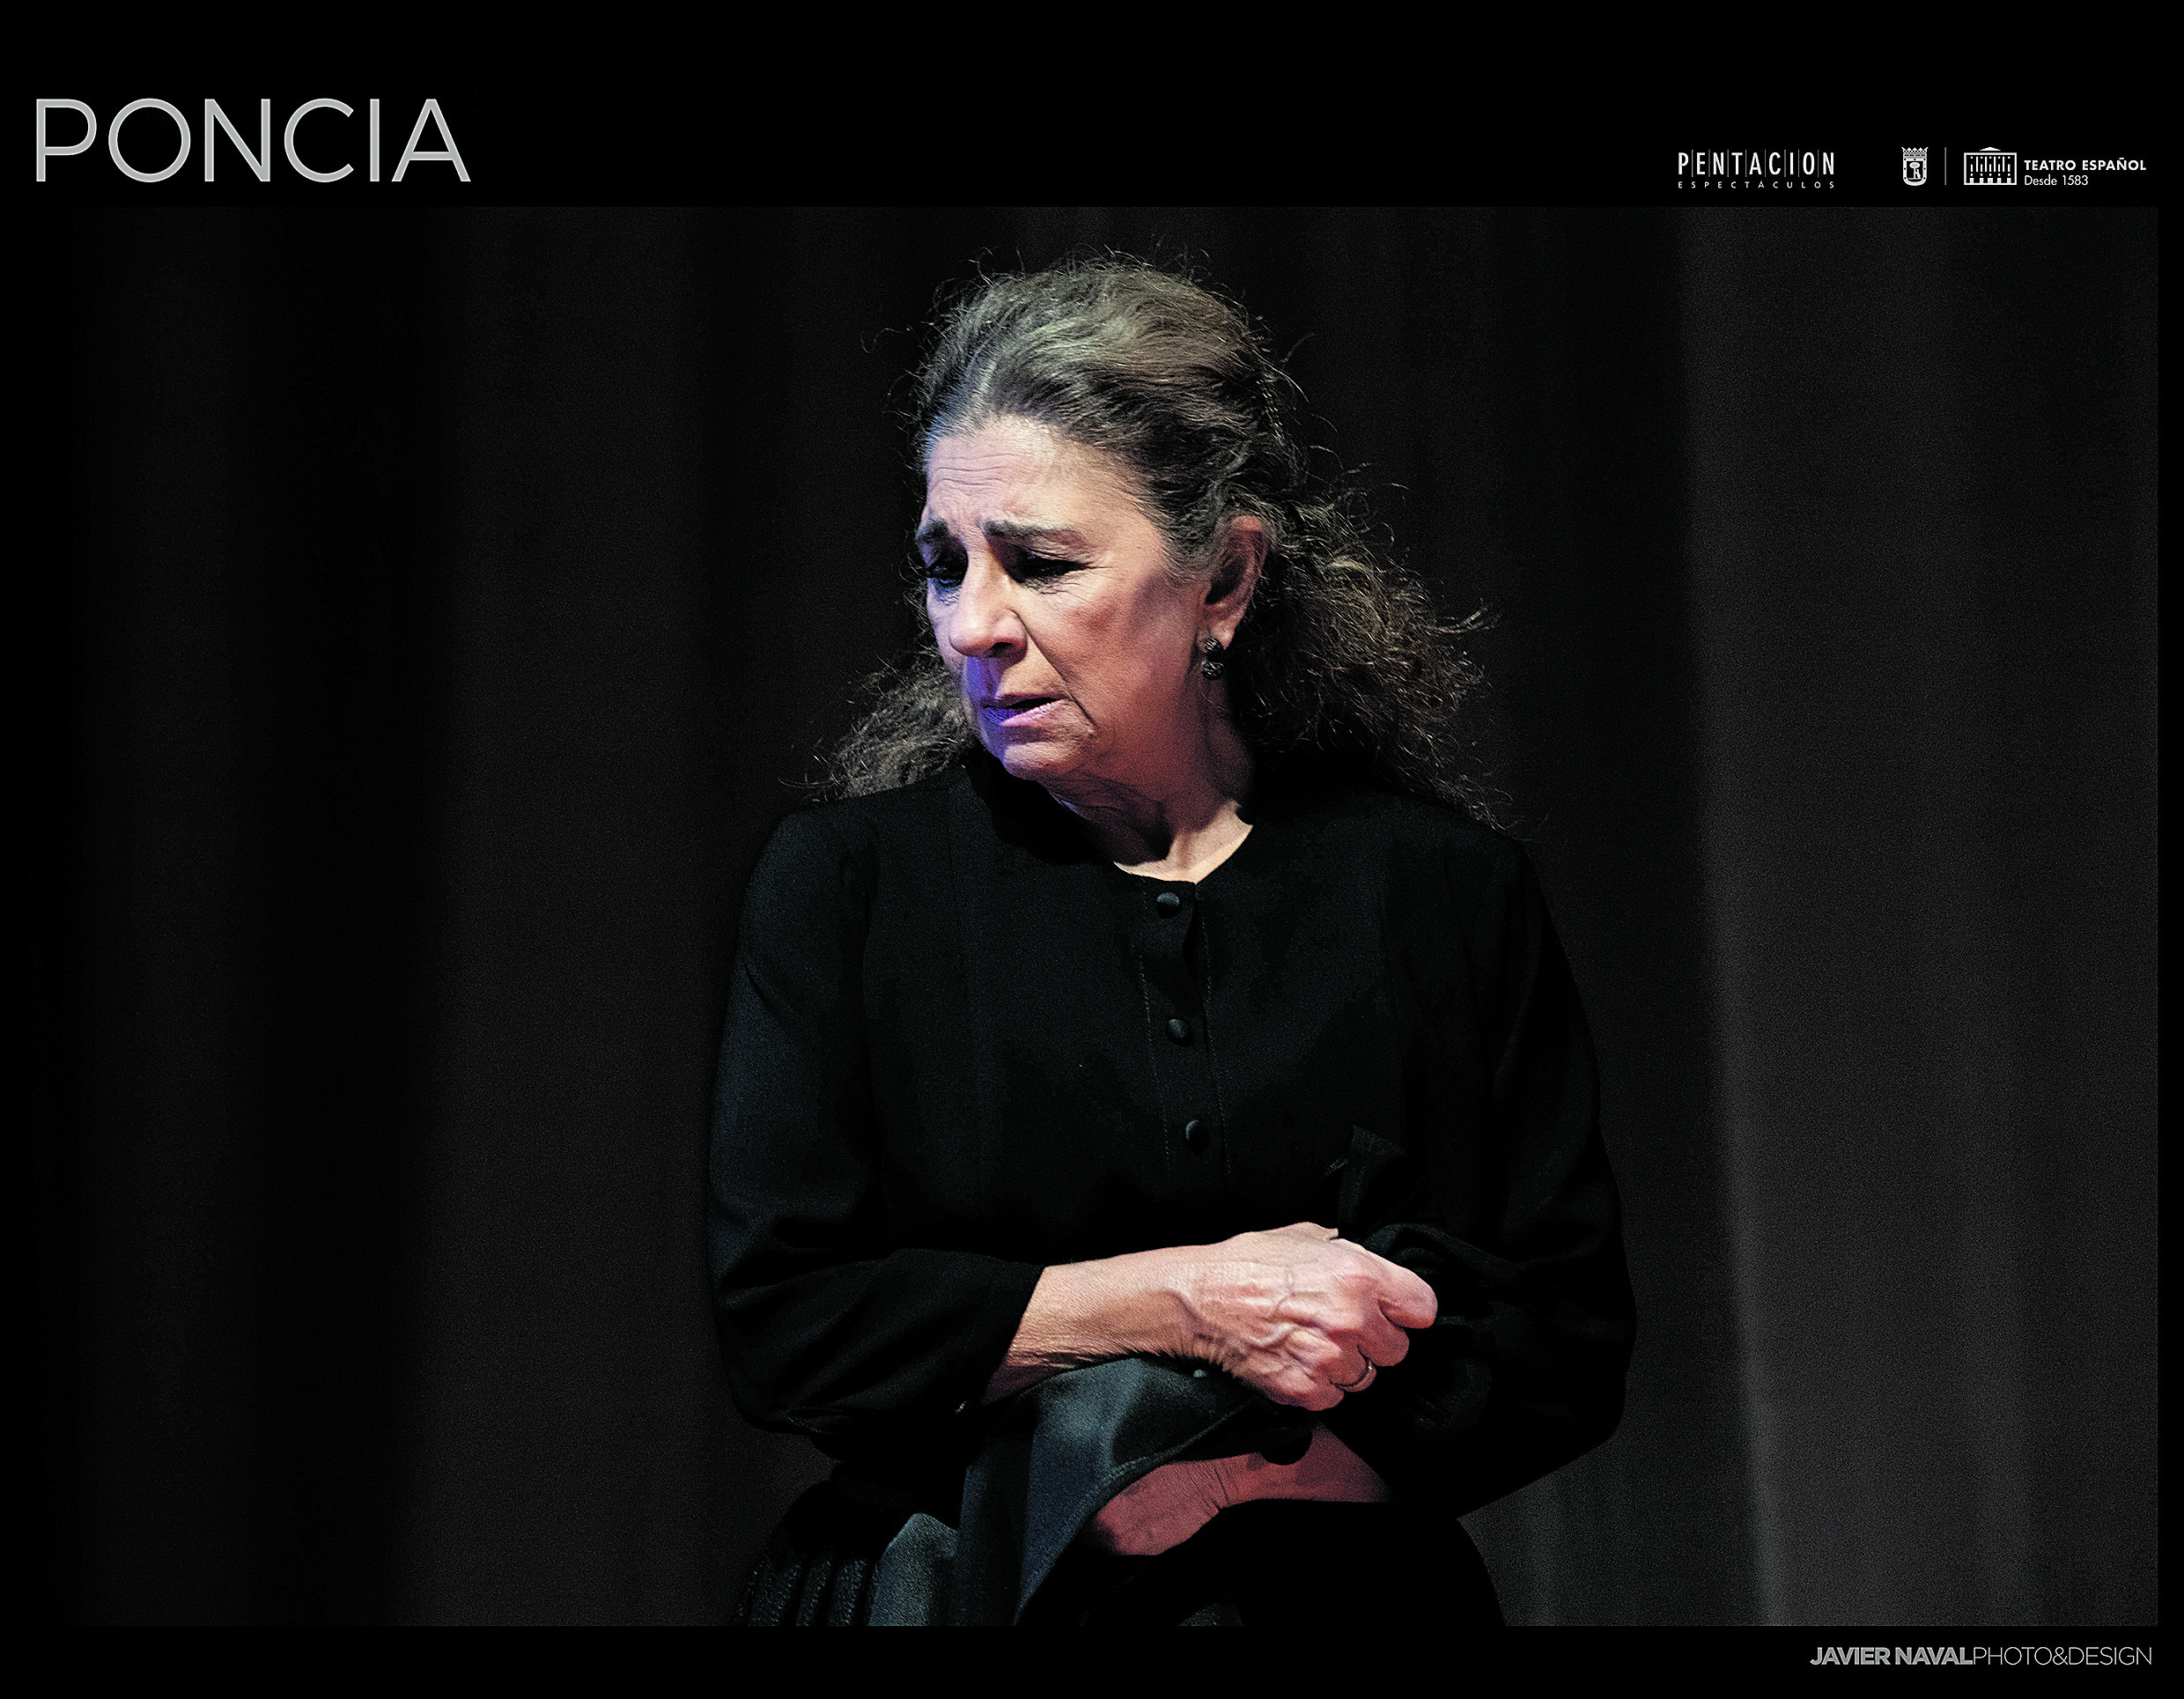 Lolita Flores en su caracterización de Poncia, la criada de Bernarda Alba en la obra de Lorca. | JAVIER NAVAL